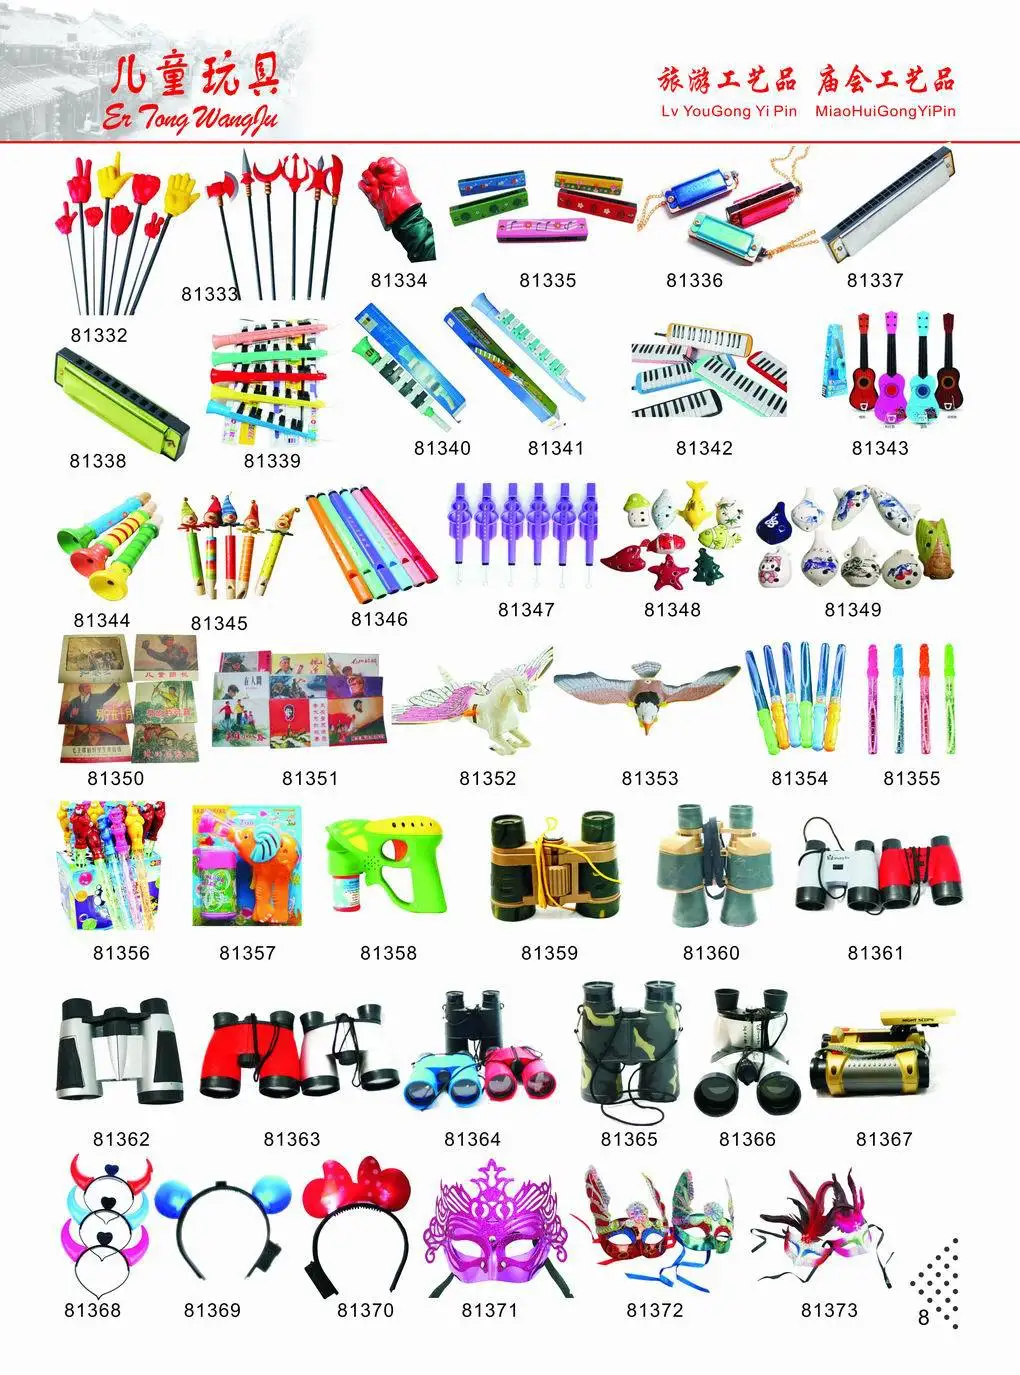 Yiwu креативная пластиковая игрушка в катушке, красочный ночной светильник, Радужное кольцо, детская игрушка